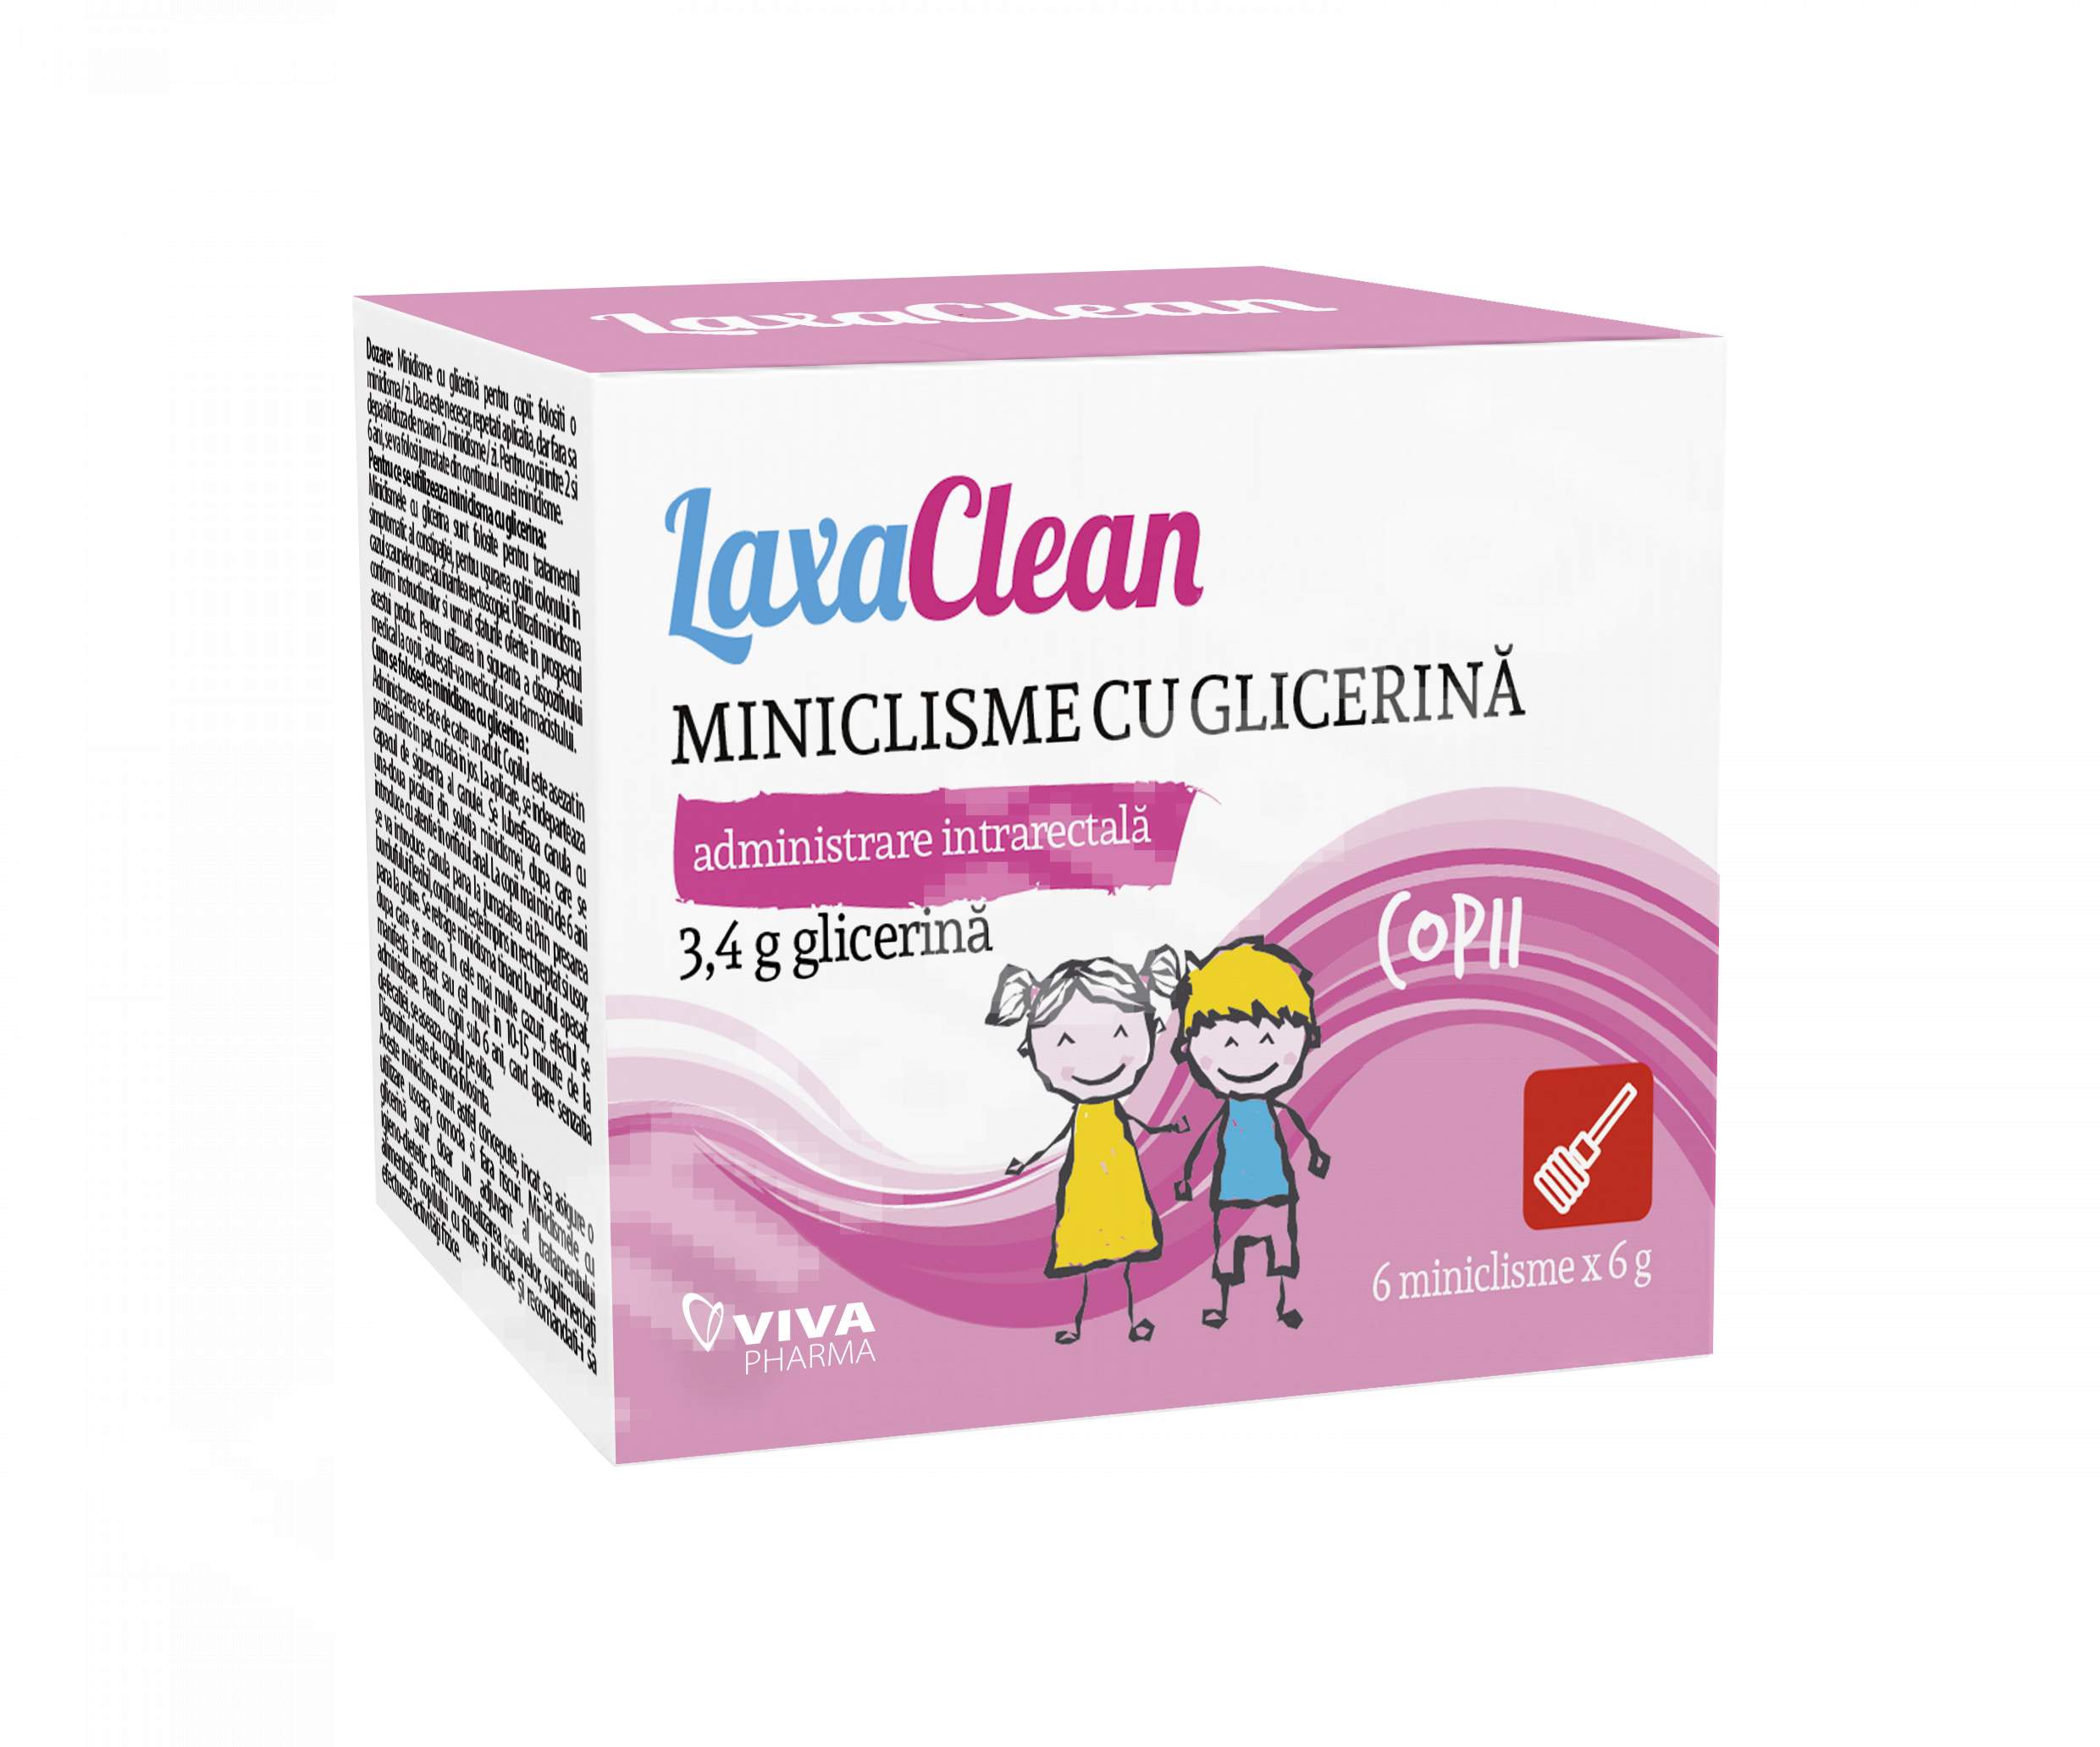 Constipatie - LaxaClean miniclisme cu glicerină pentru copii, 6 bucăți, Viva Pharma, sinapis.ro